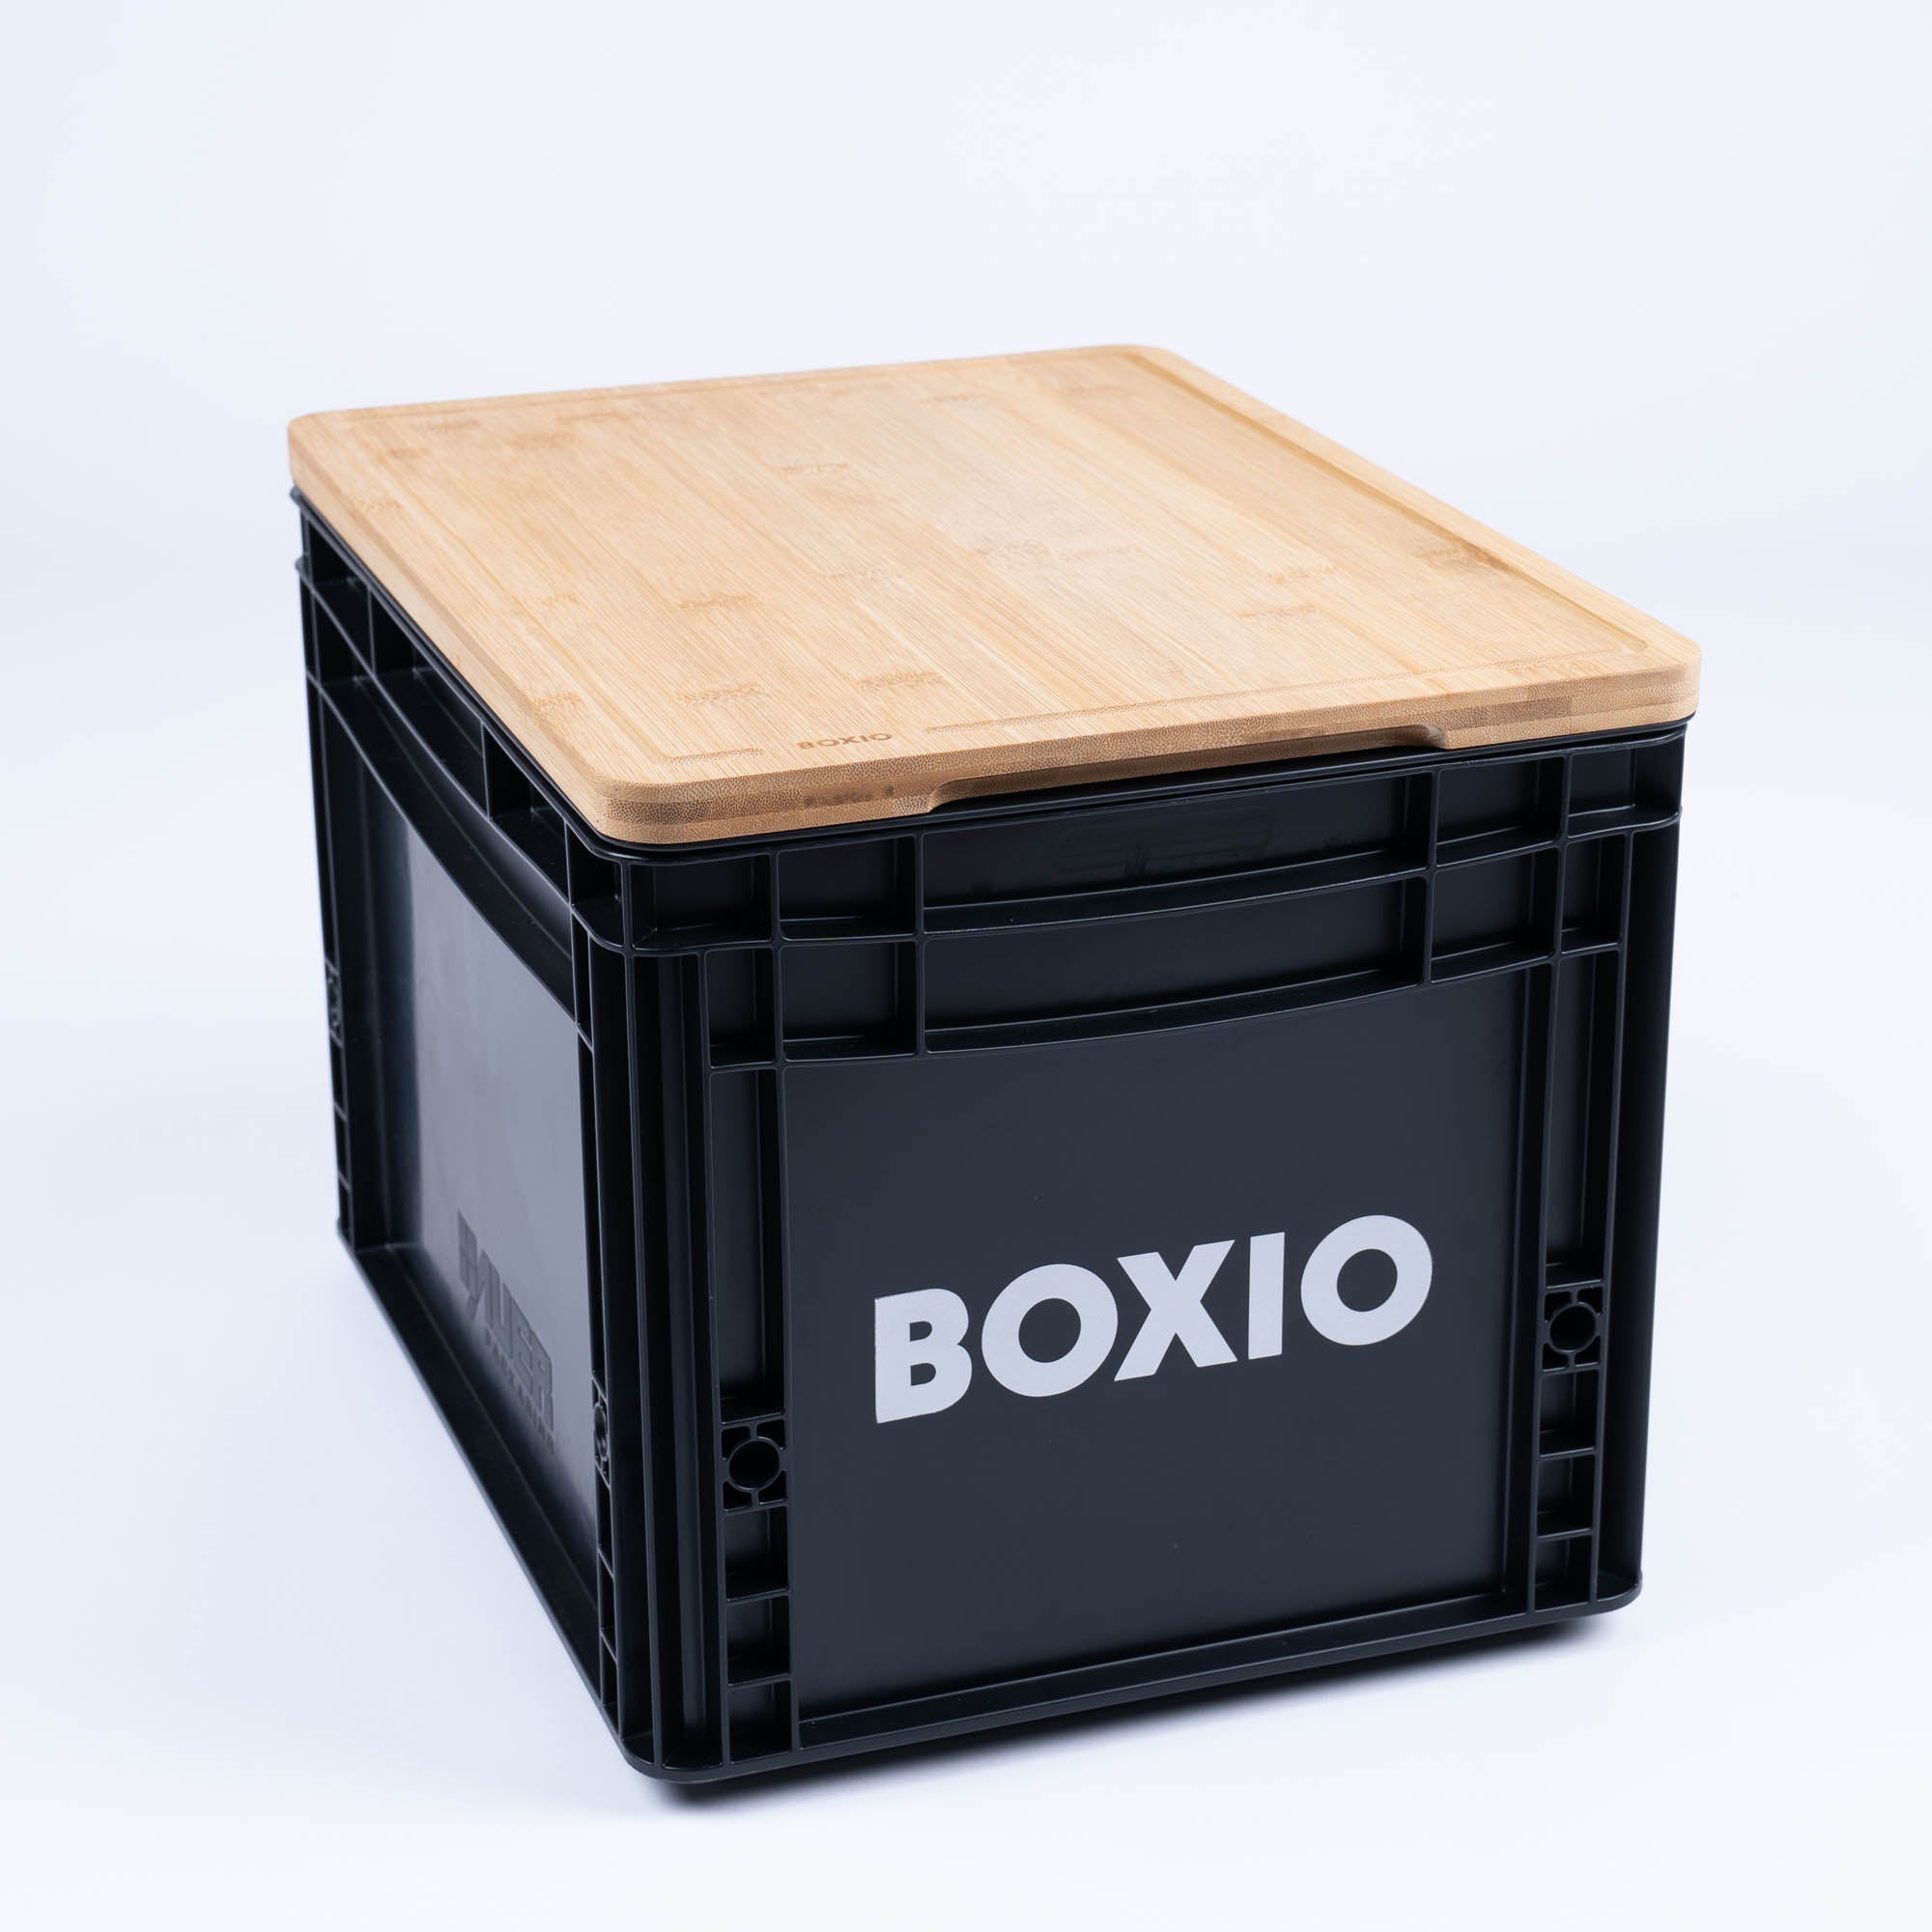 BOXIO - TABLA DE CORTAR